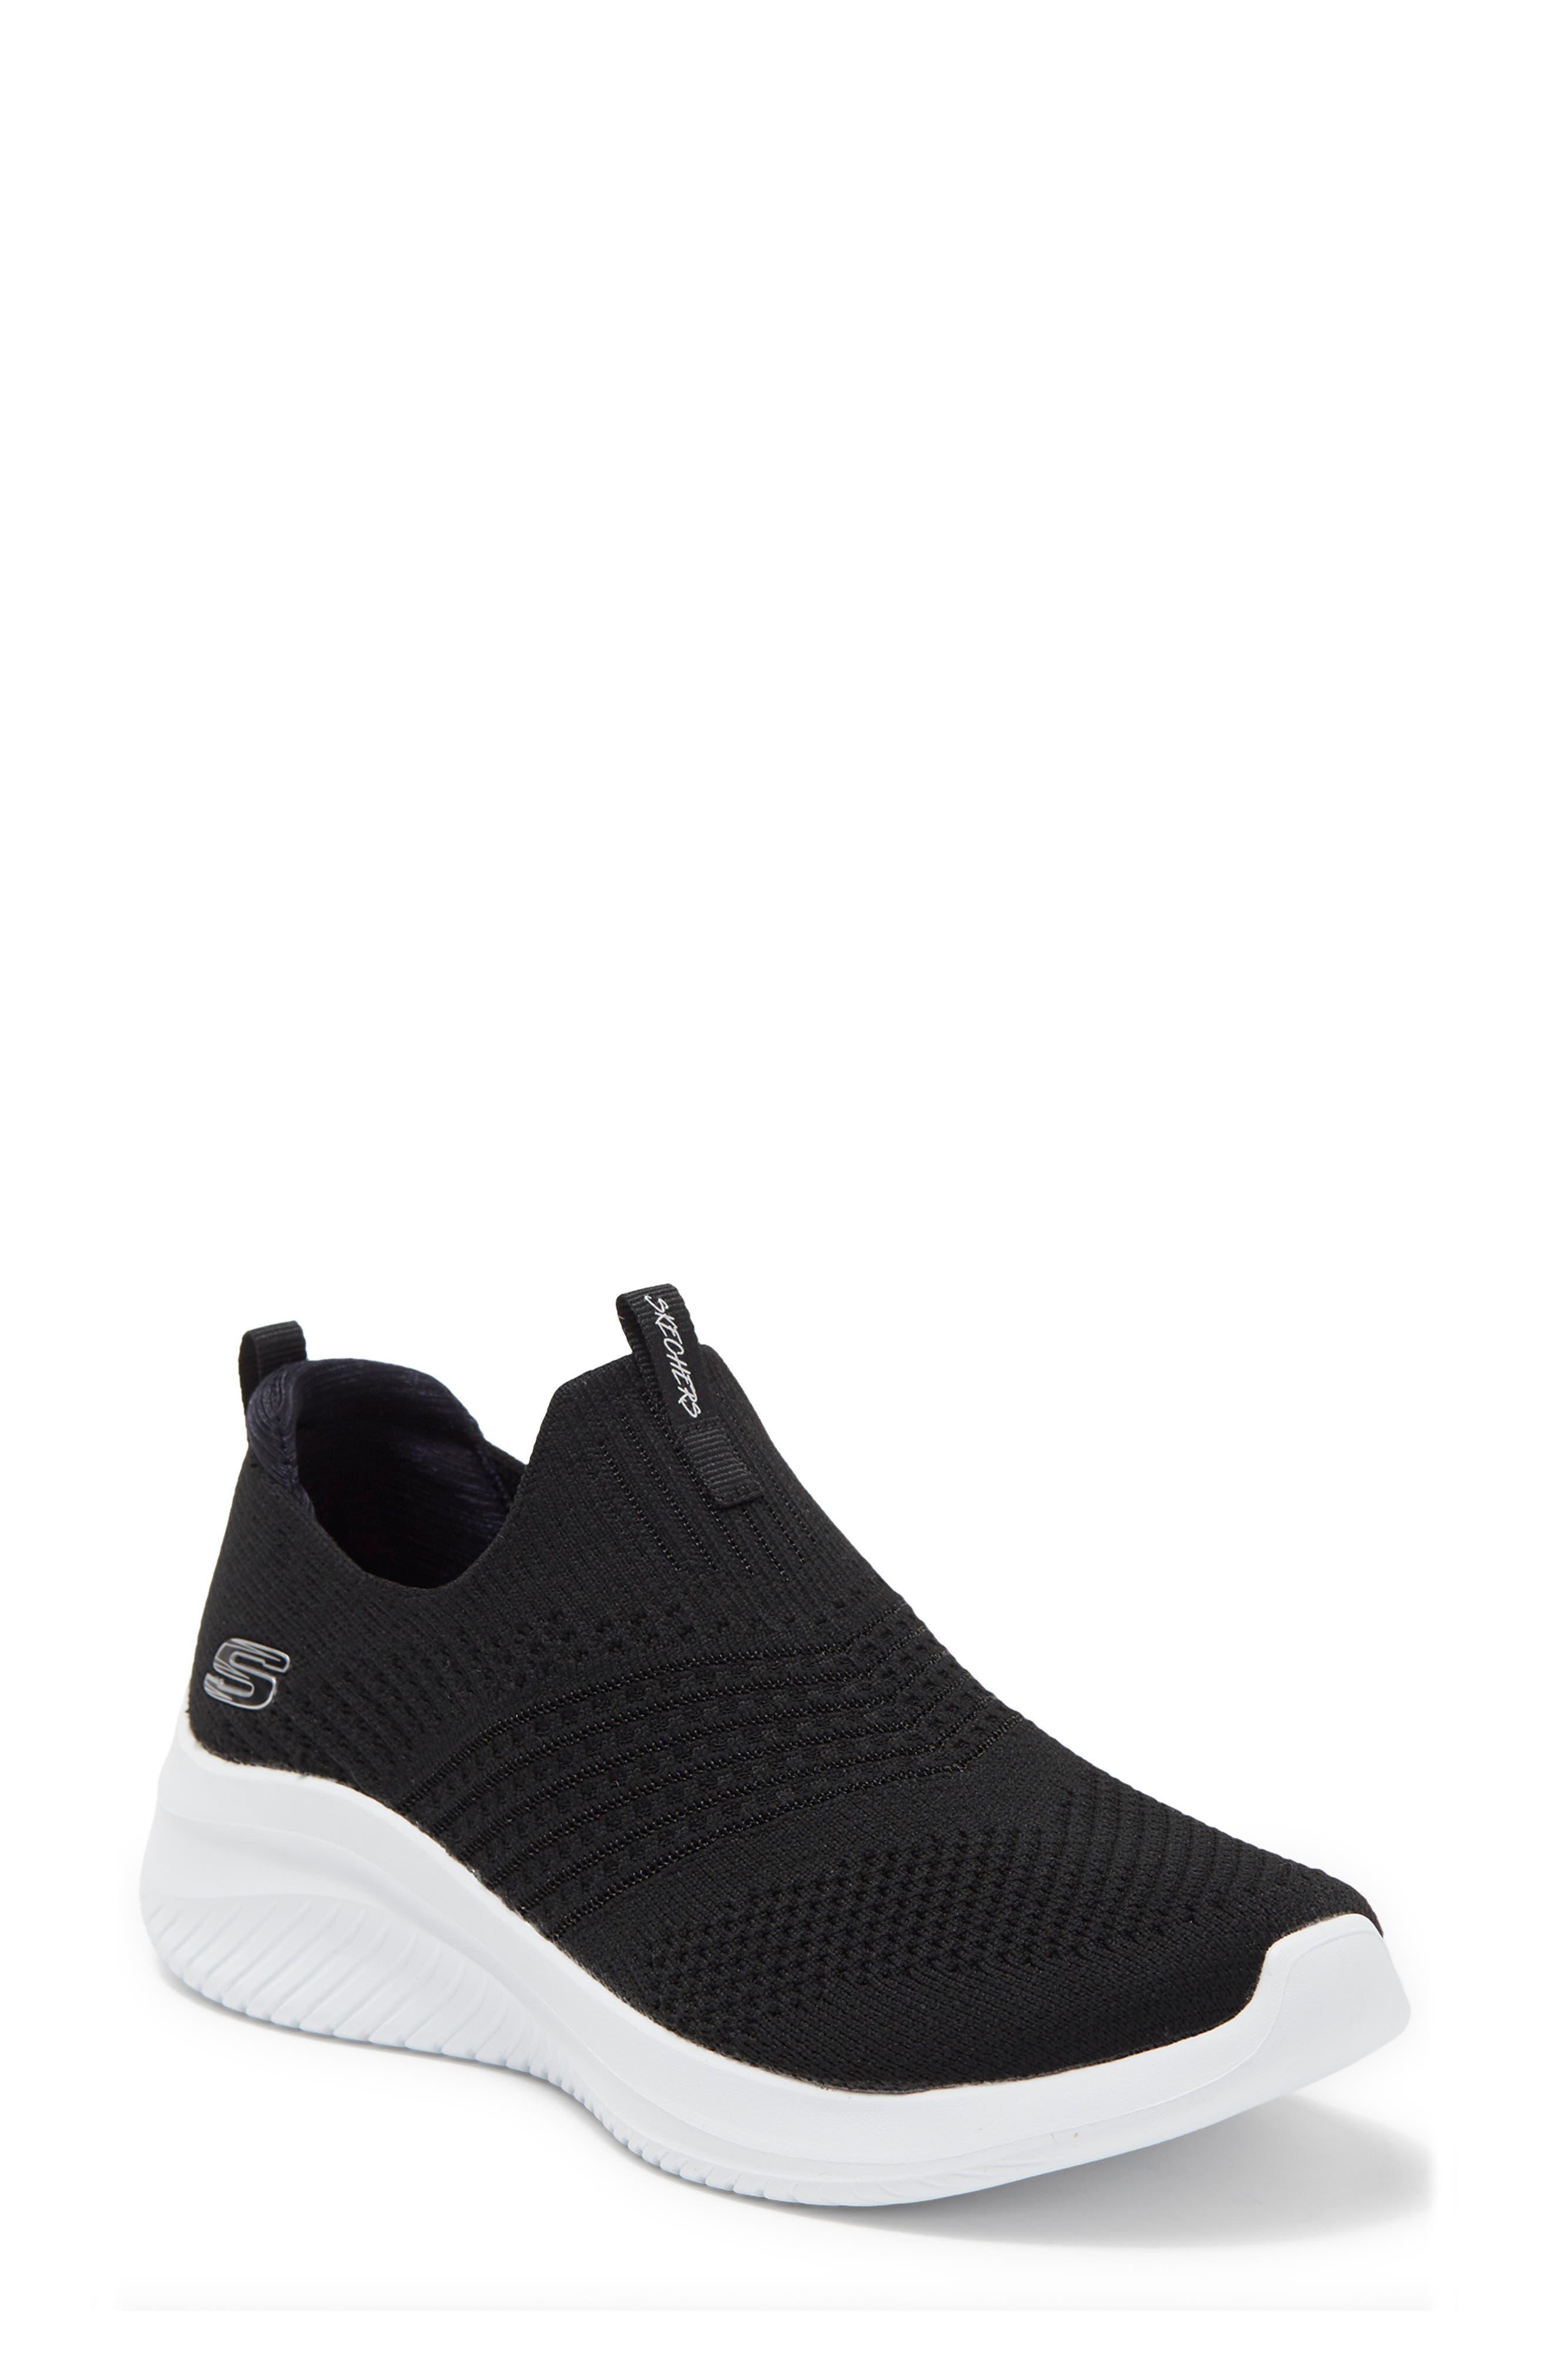 Skechers Ultra Flex 3.0 Classy Charm Sneaker in Black | Lyst